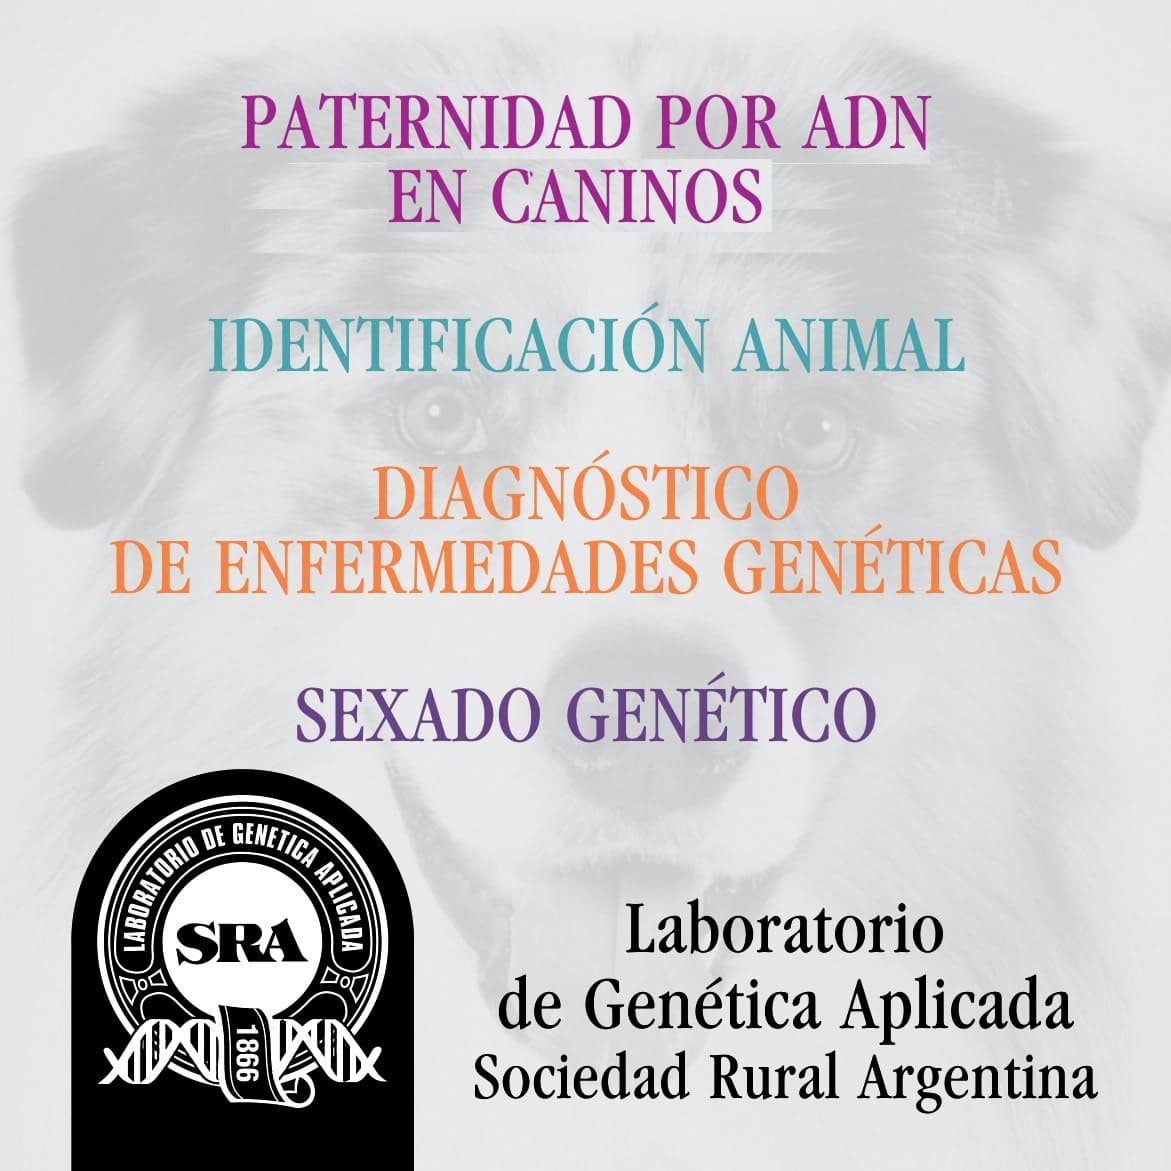 Laboratorio de Genética Aplicada Sociedad Rural Argentina